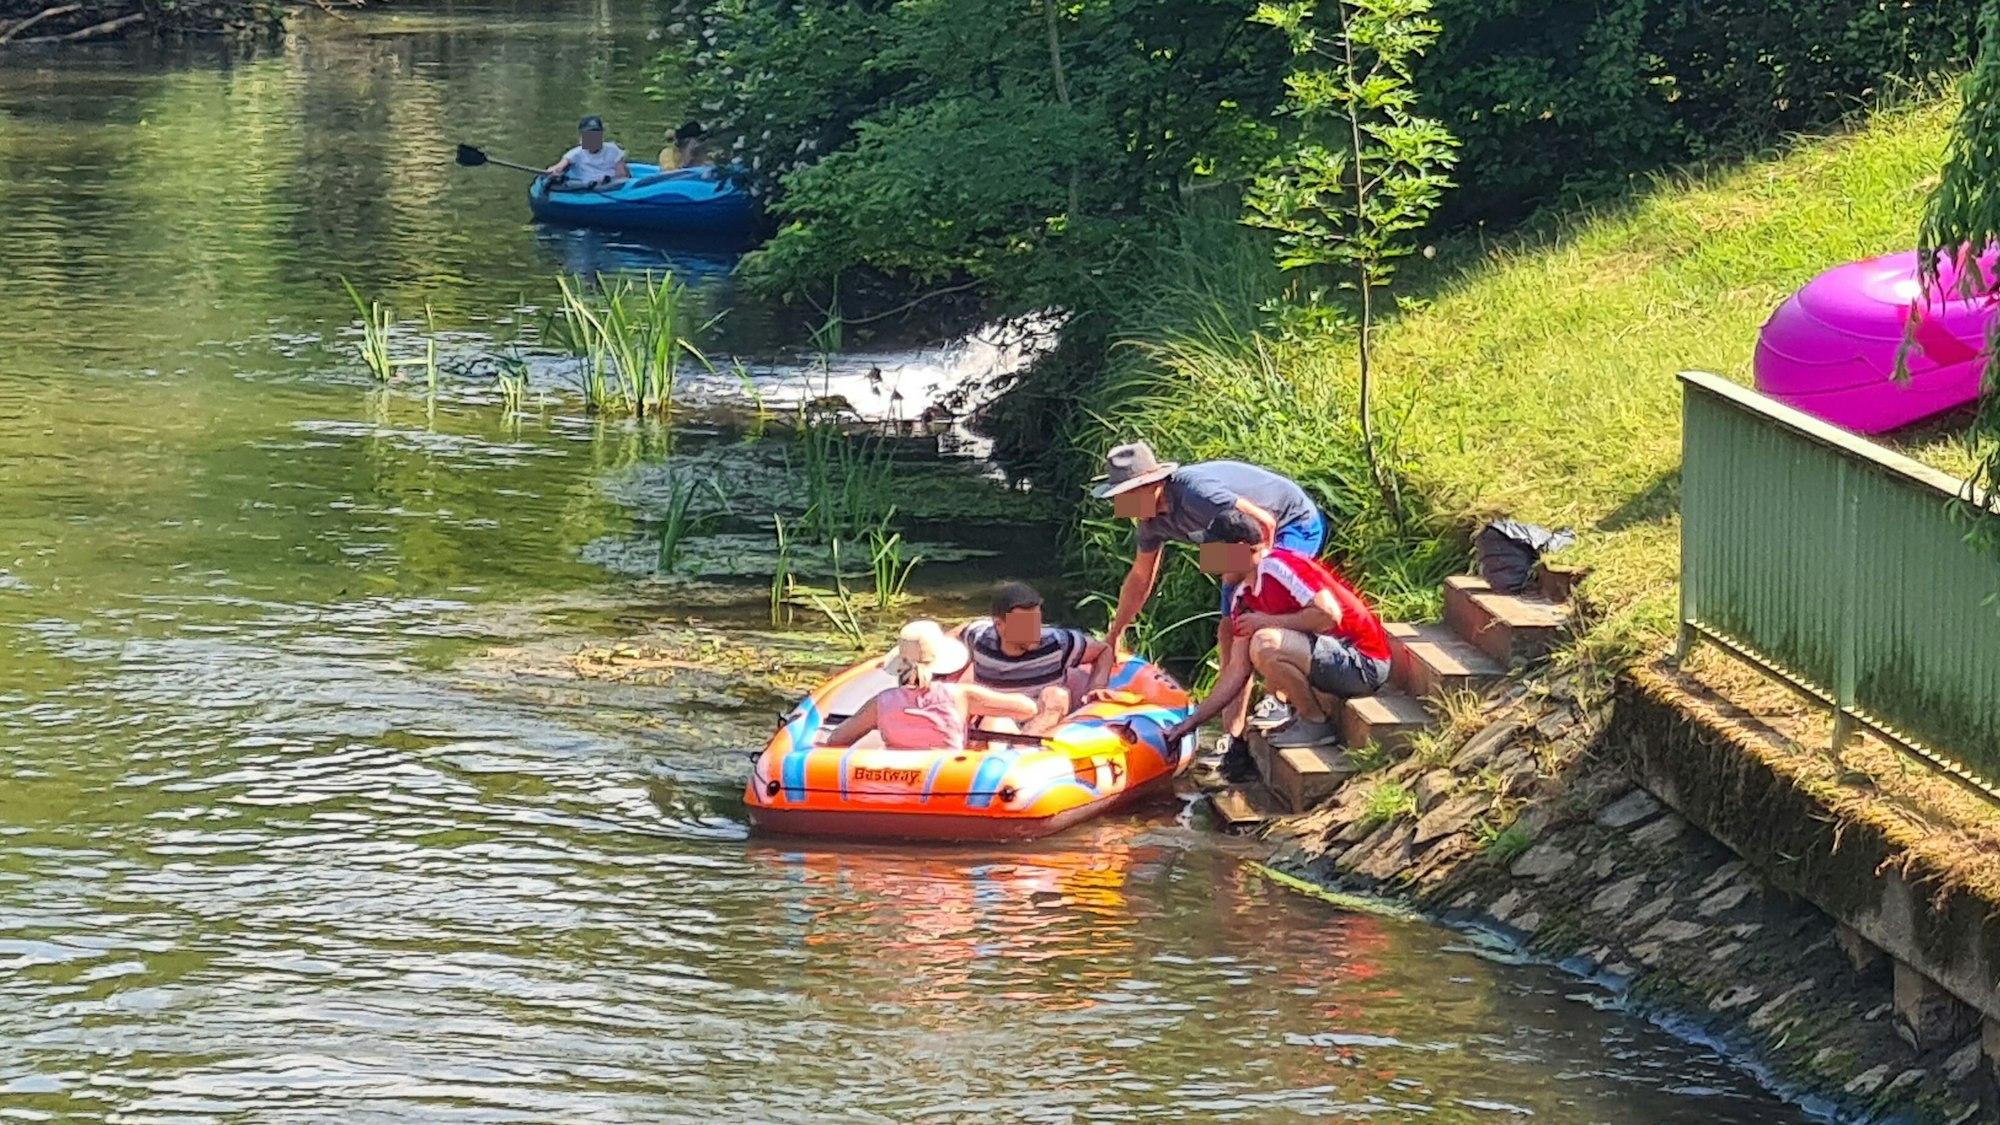 Das Bild zeigt zwei Kinder in einem Schlauchboot auf der Erft. Am Ufer hocken zwei Erwachsene, die das Schlauchboot festhalten.